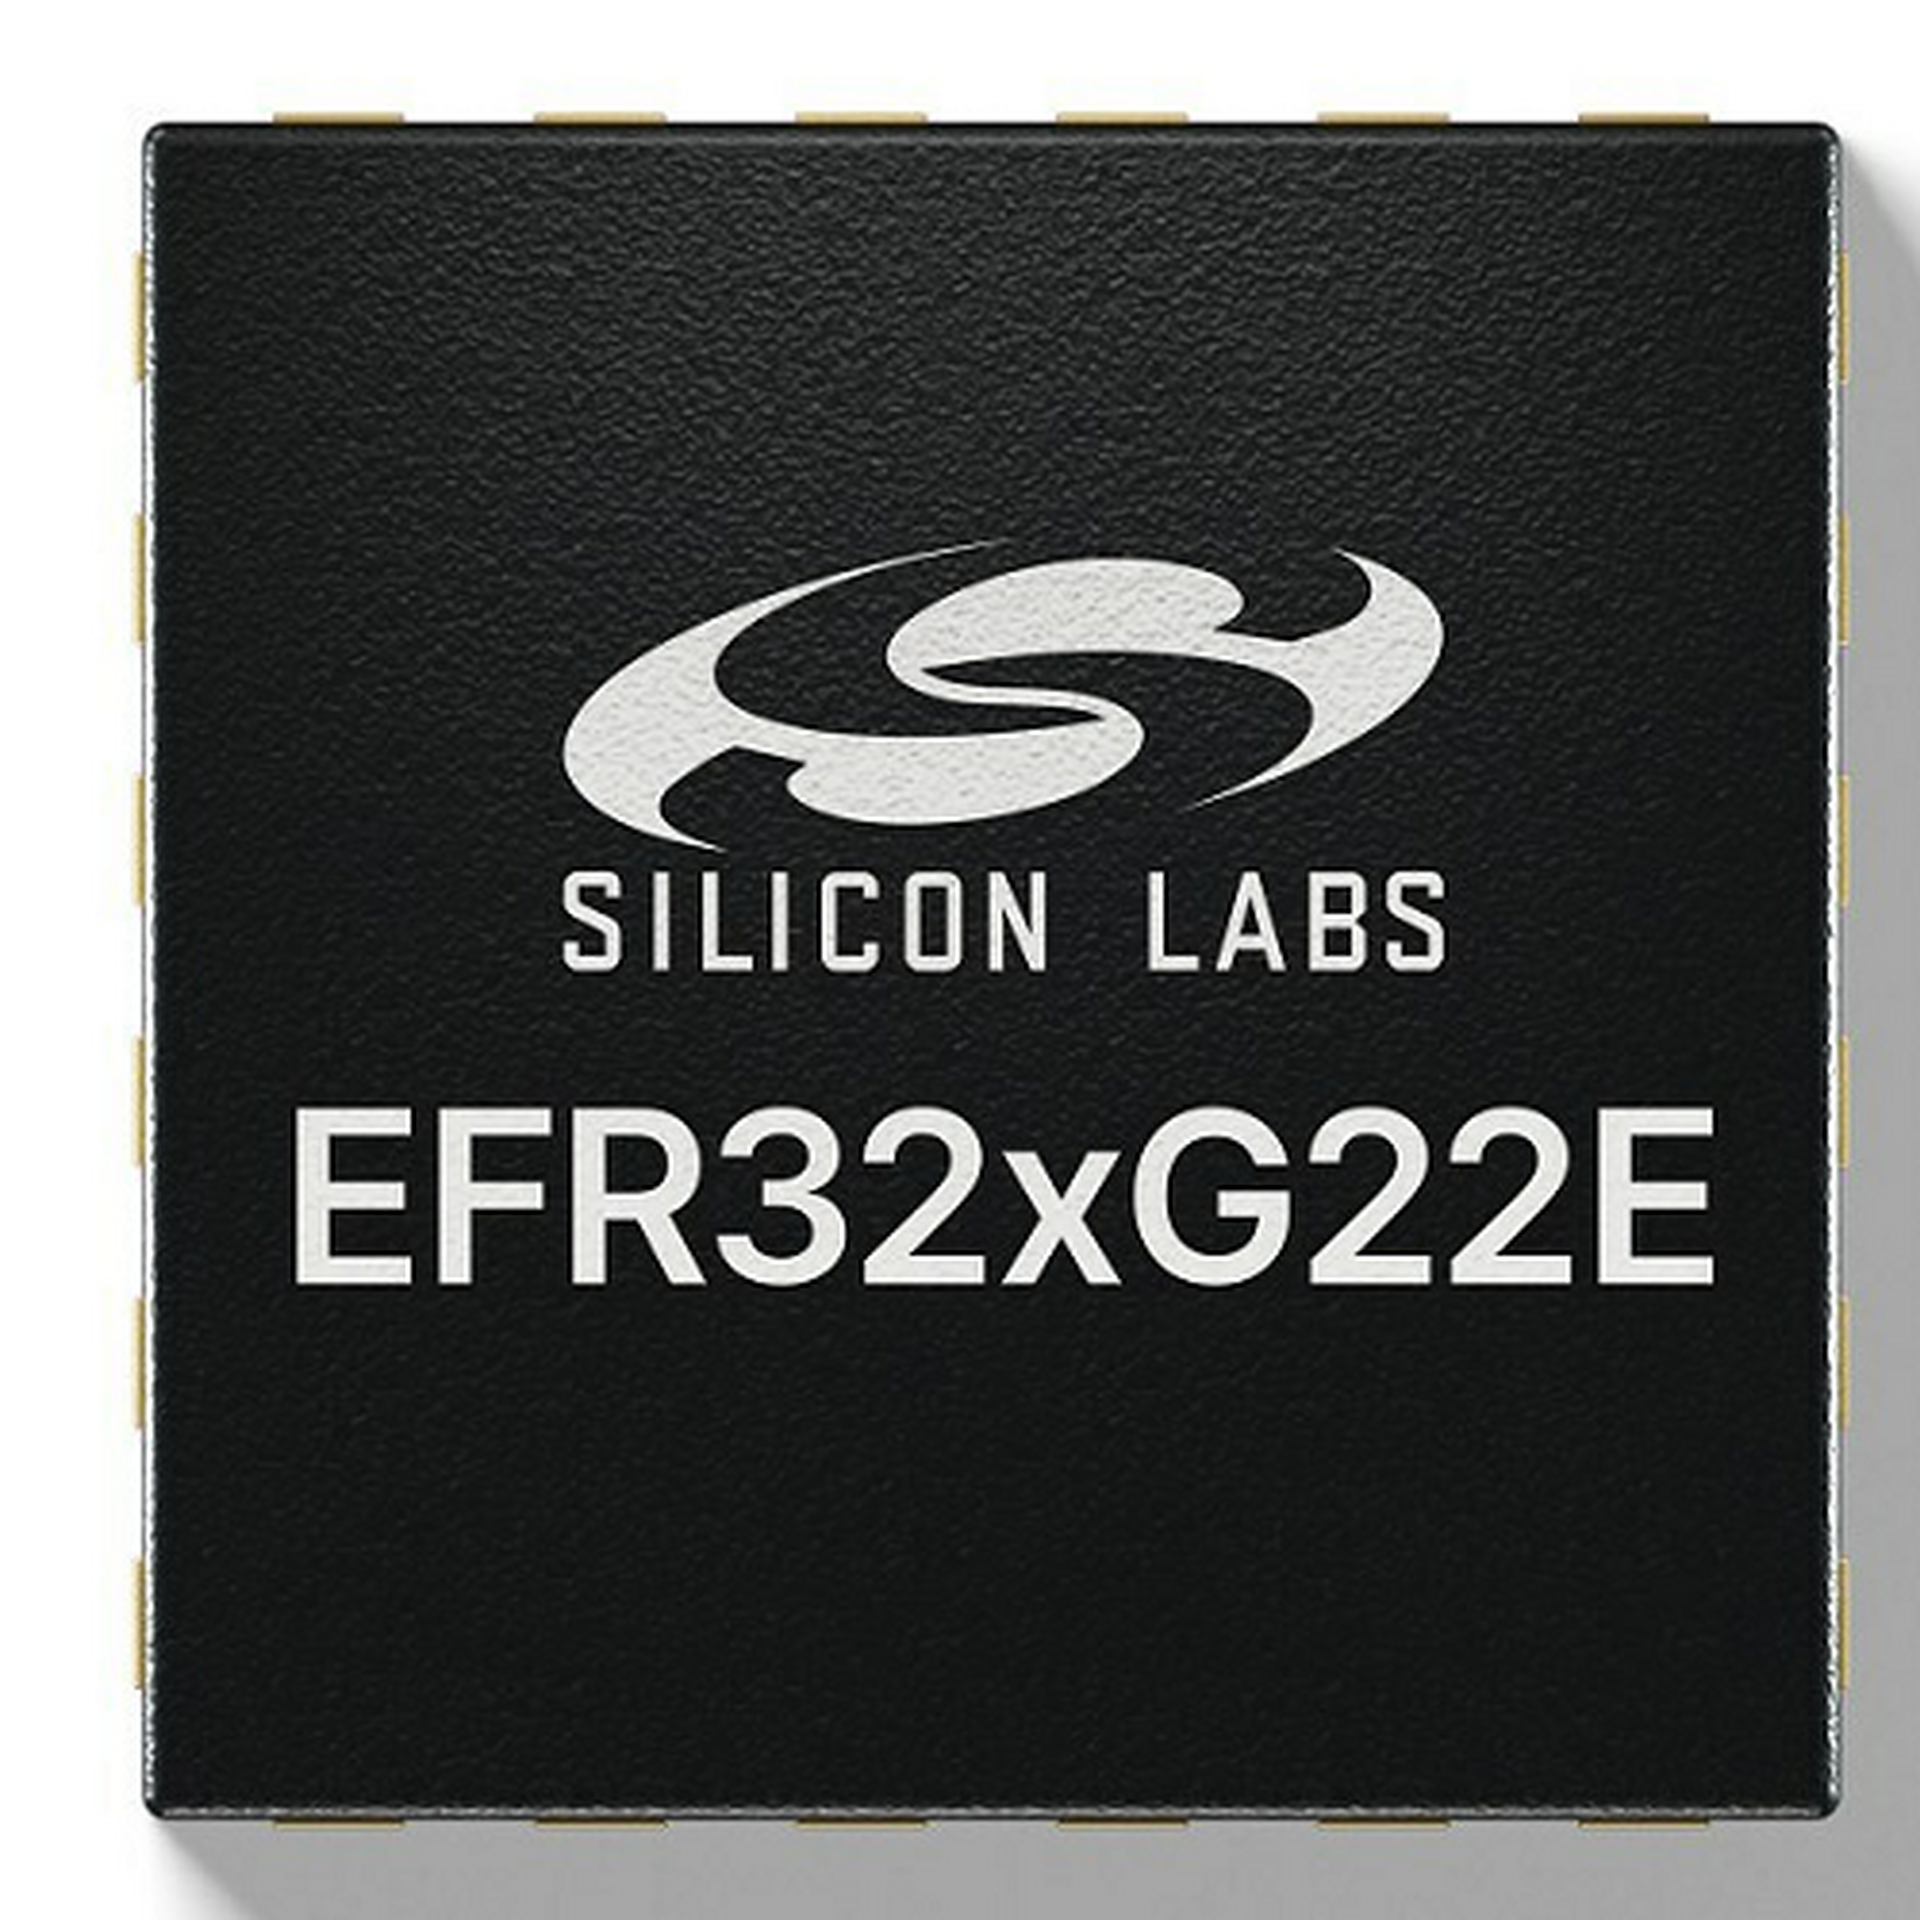 Silicon Labs EFR32x G22 E